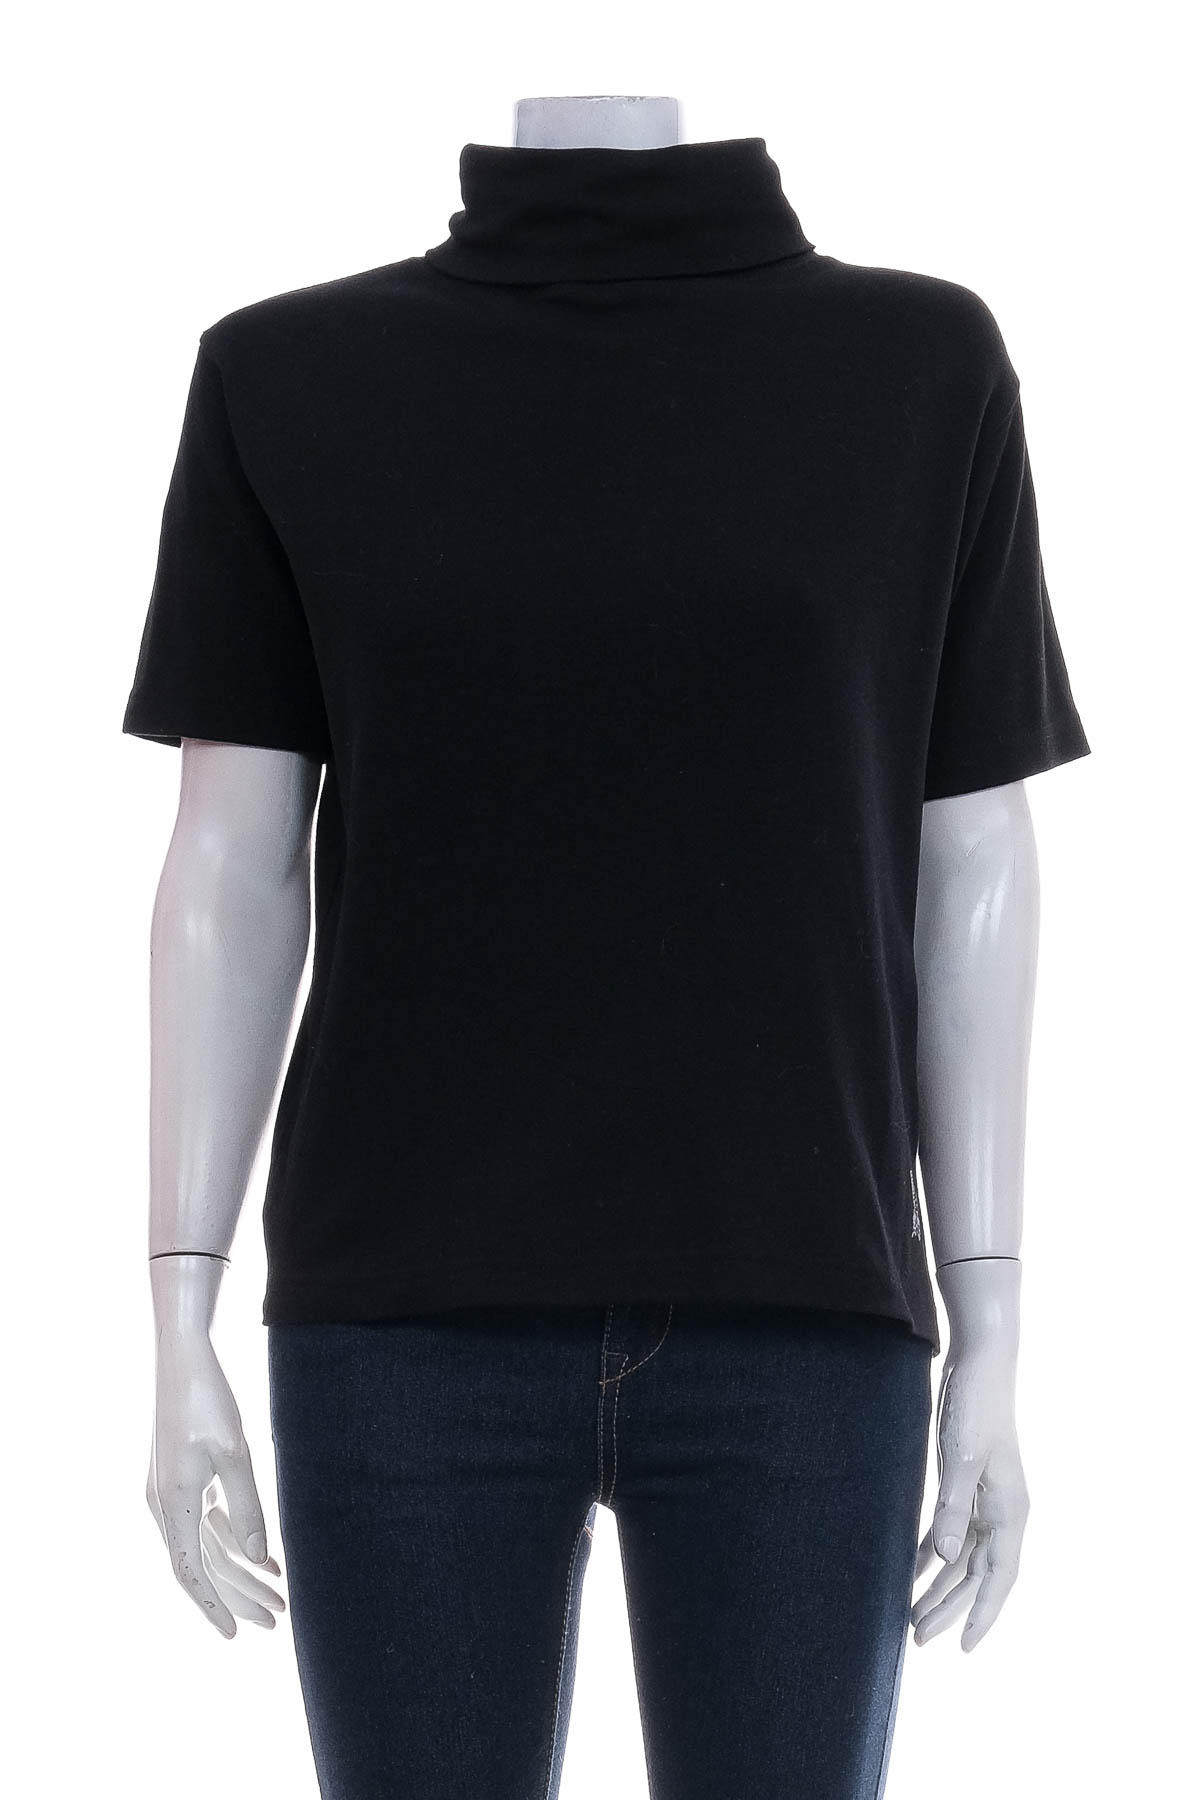 Γυναικείο μπλουζάκι - Identic - 0